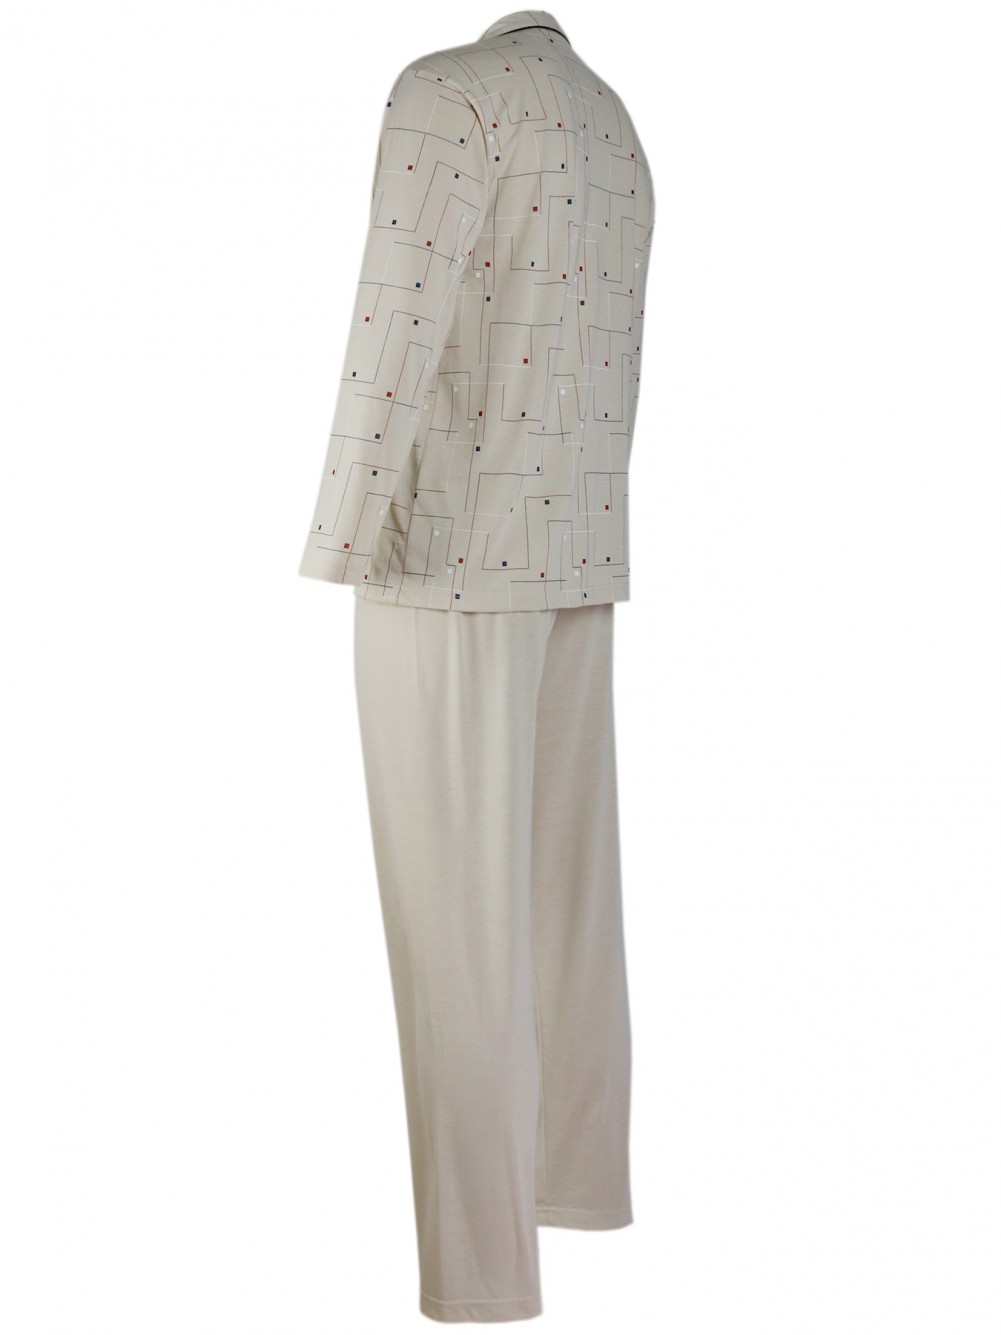 Herren Pyjama - langer Schlafanzug in Jersey Qualität - beige/Seitenansicht